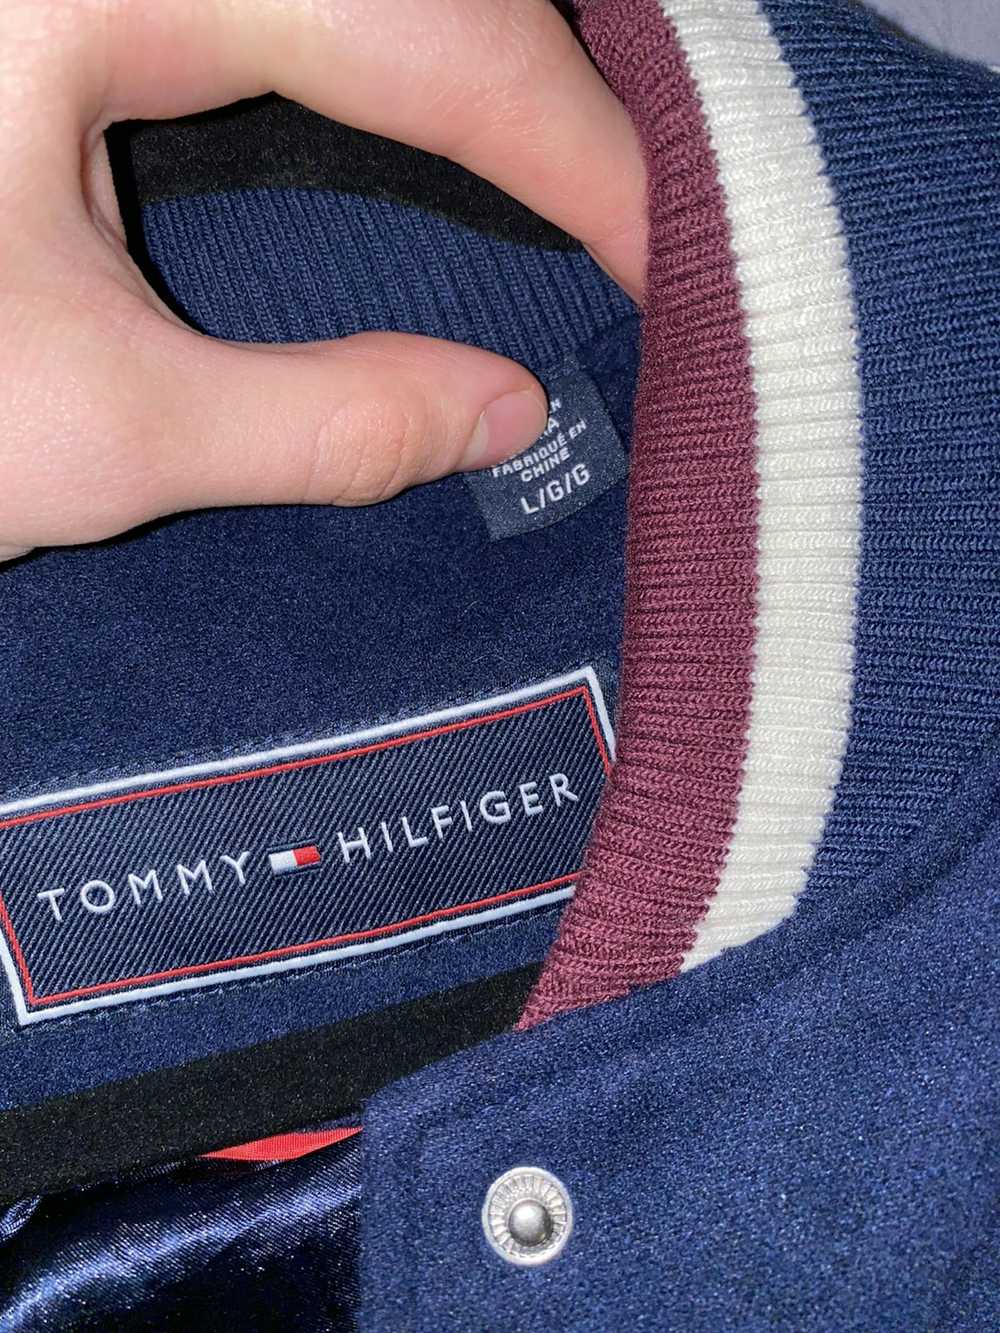 Tommy Hilfiger Bomber Jacket - image 6